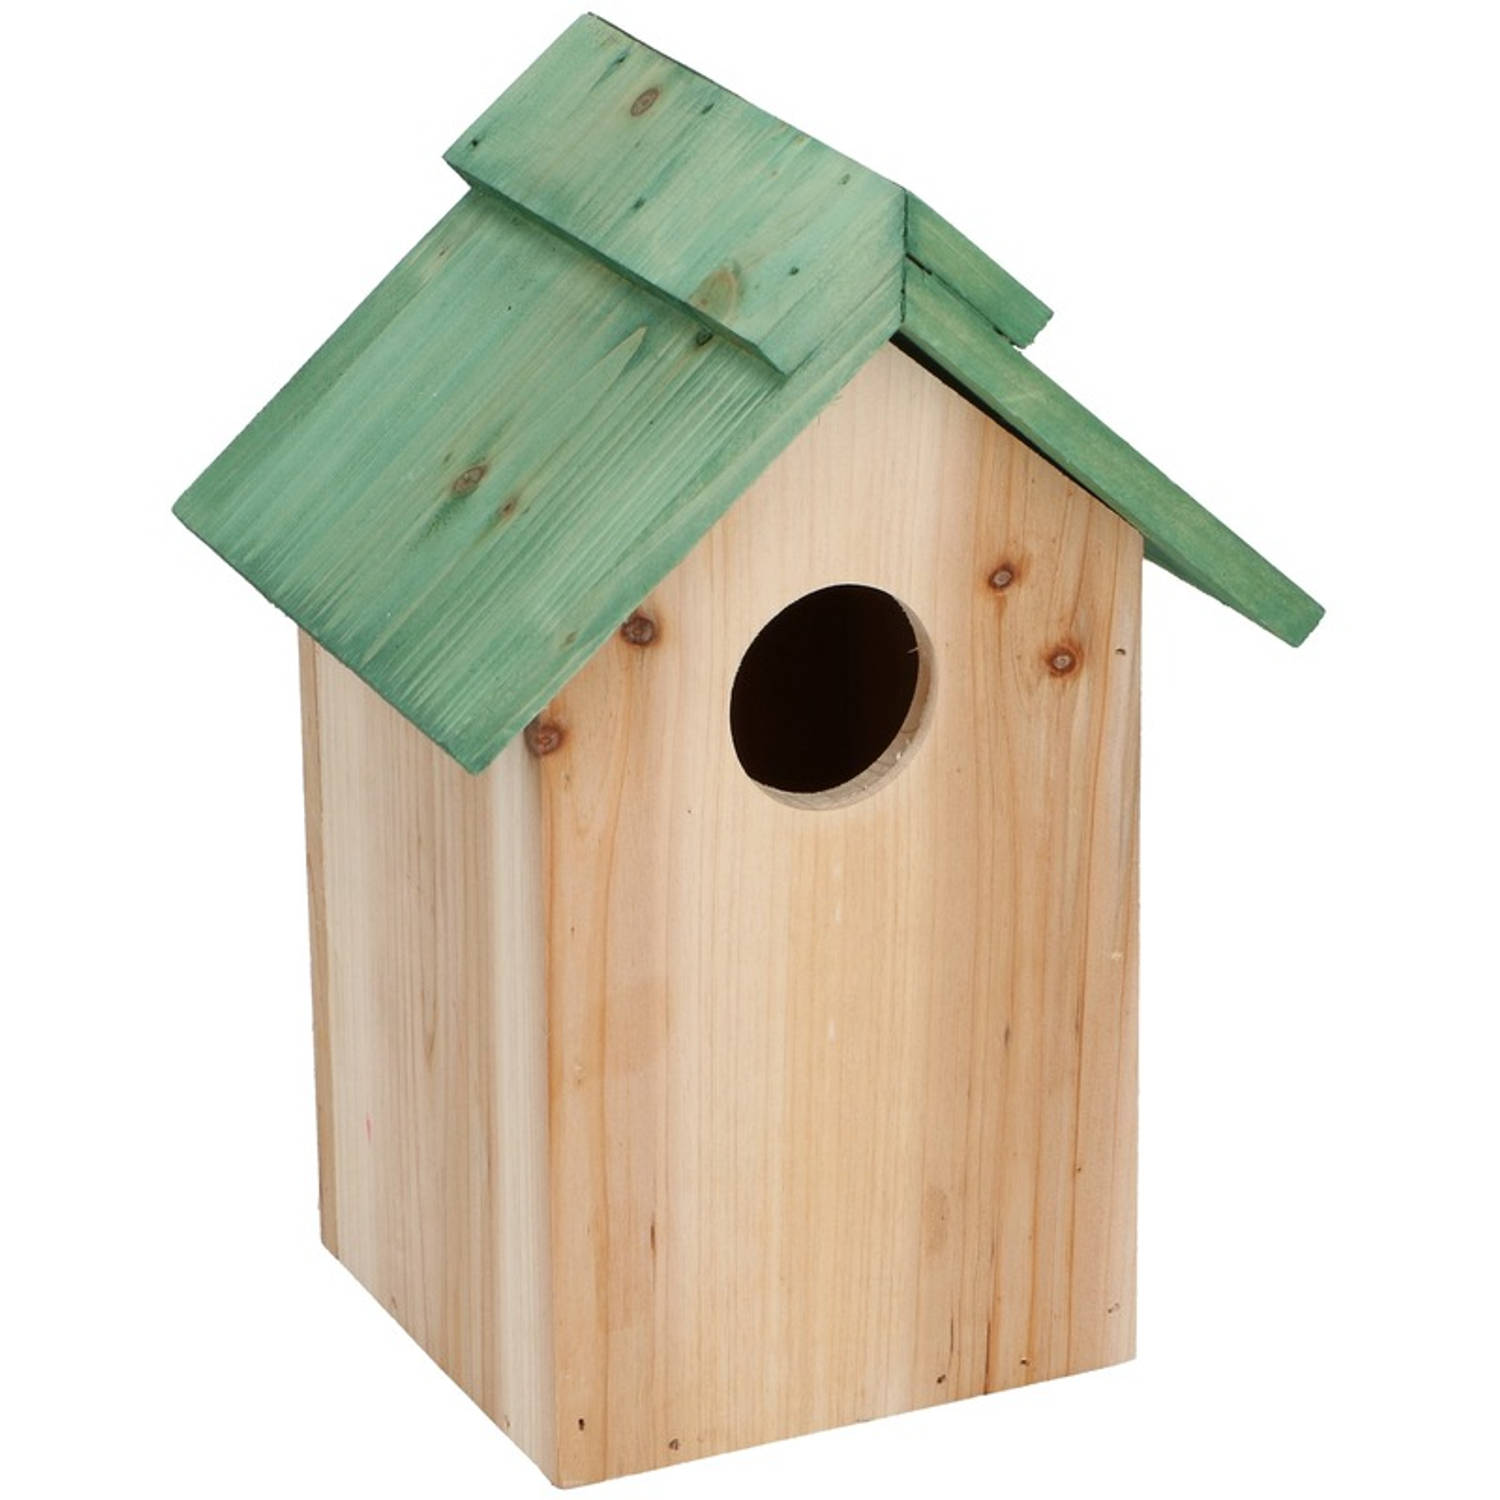 Lifetime Garden Houten Vogelhuisje/nestkastje Met Groen Dak 24 Cm Vogelhuisjes online kopen